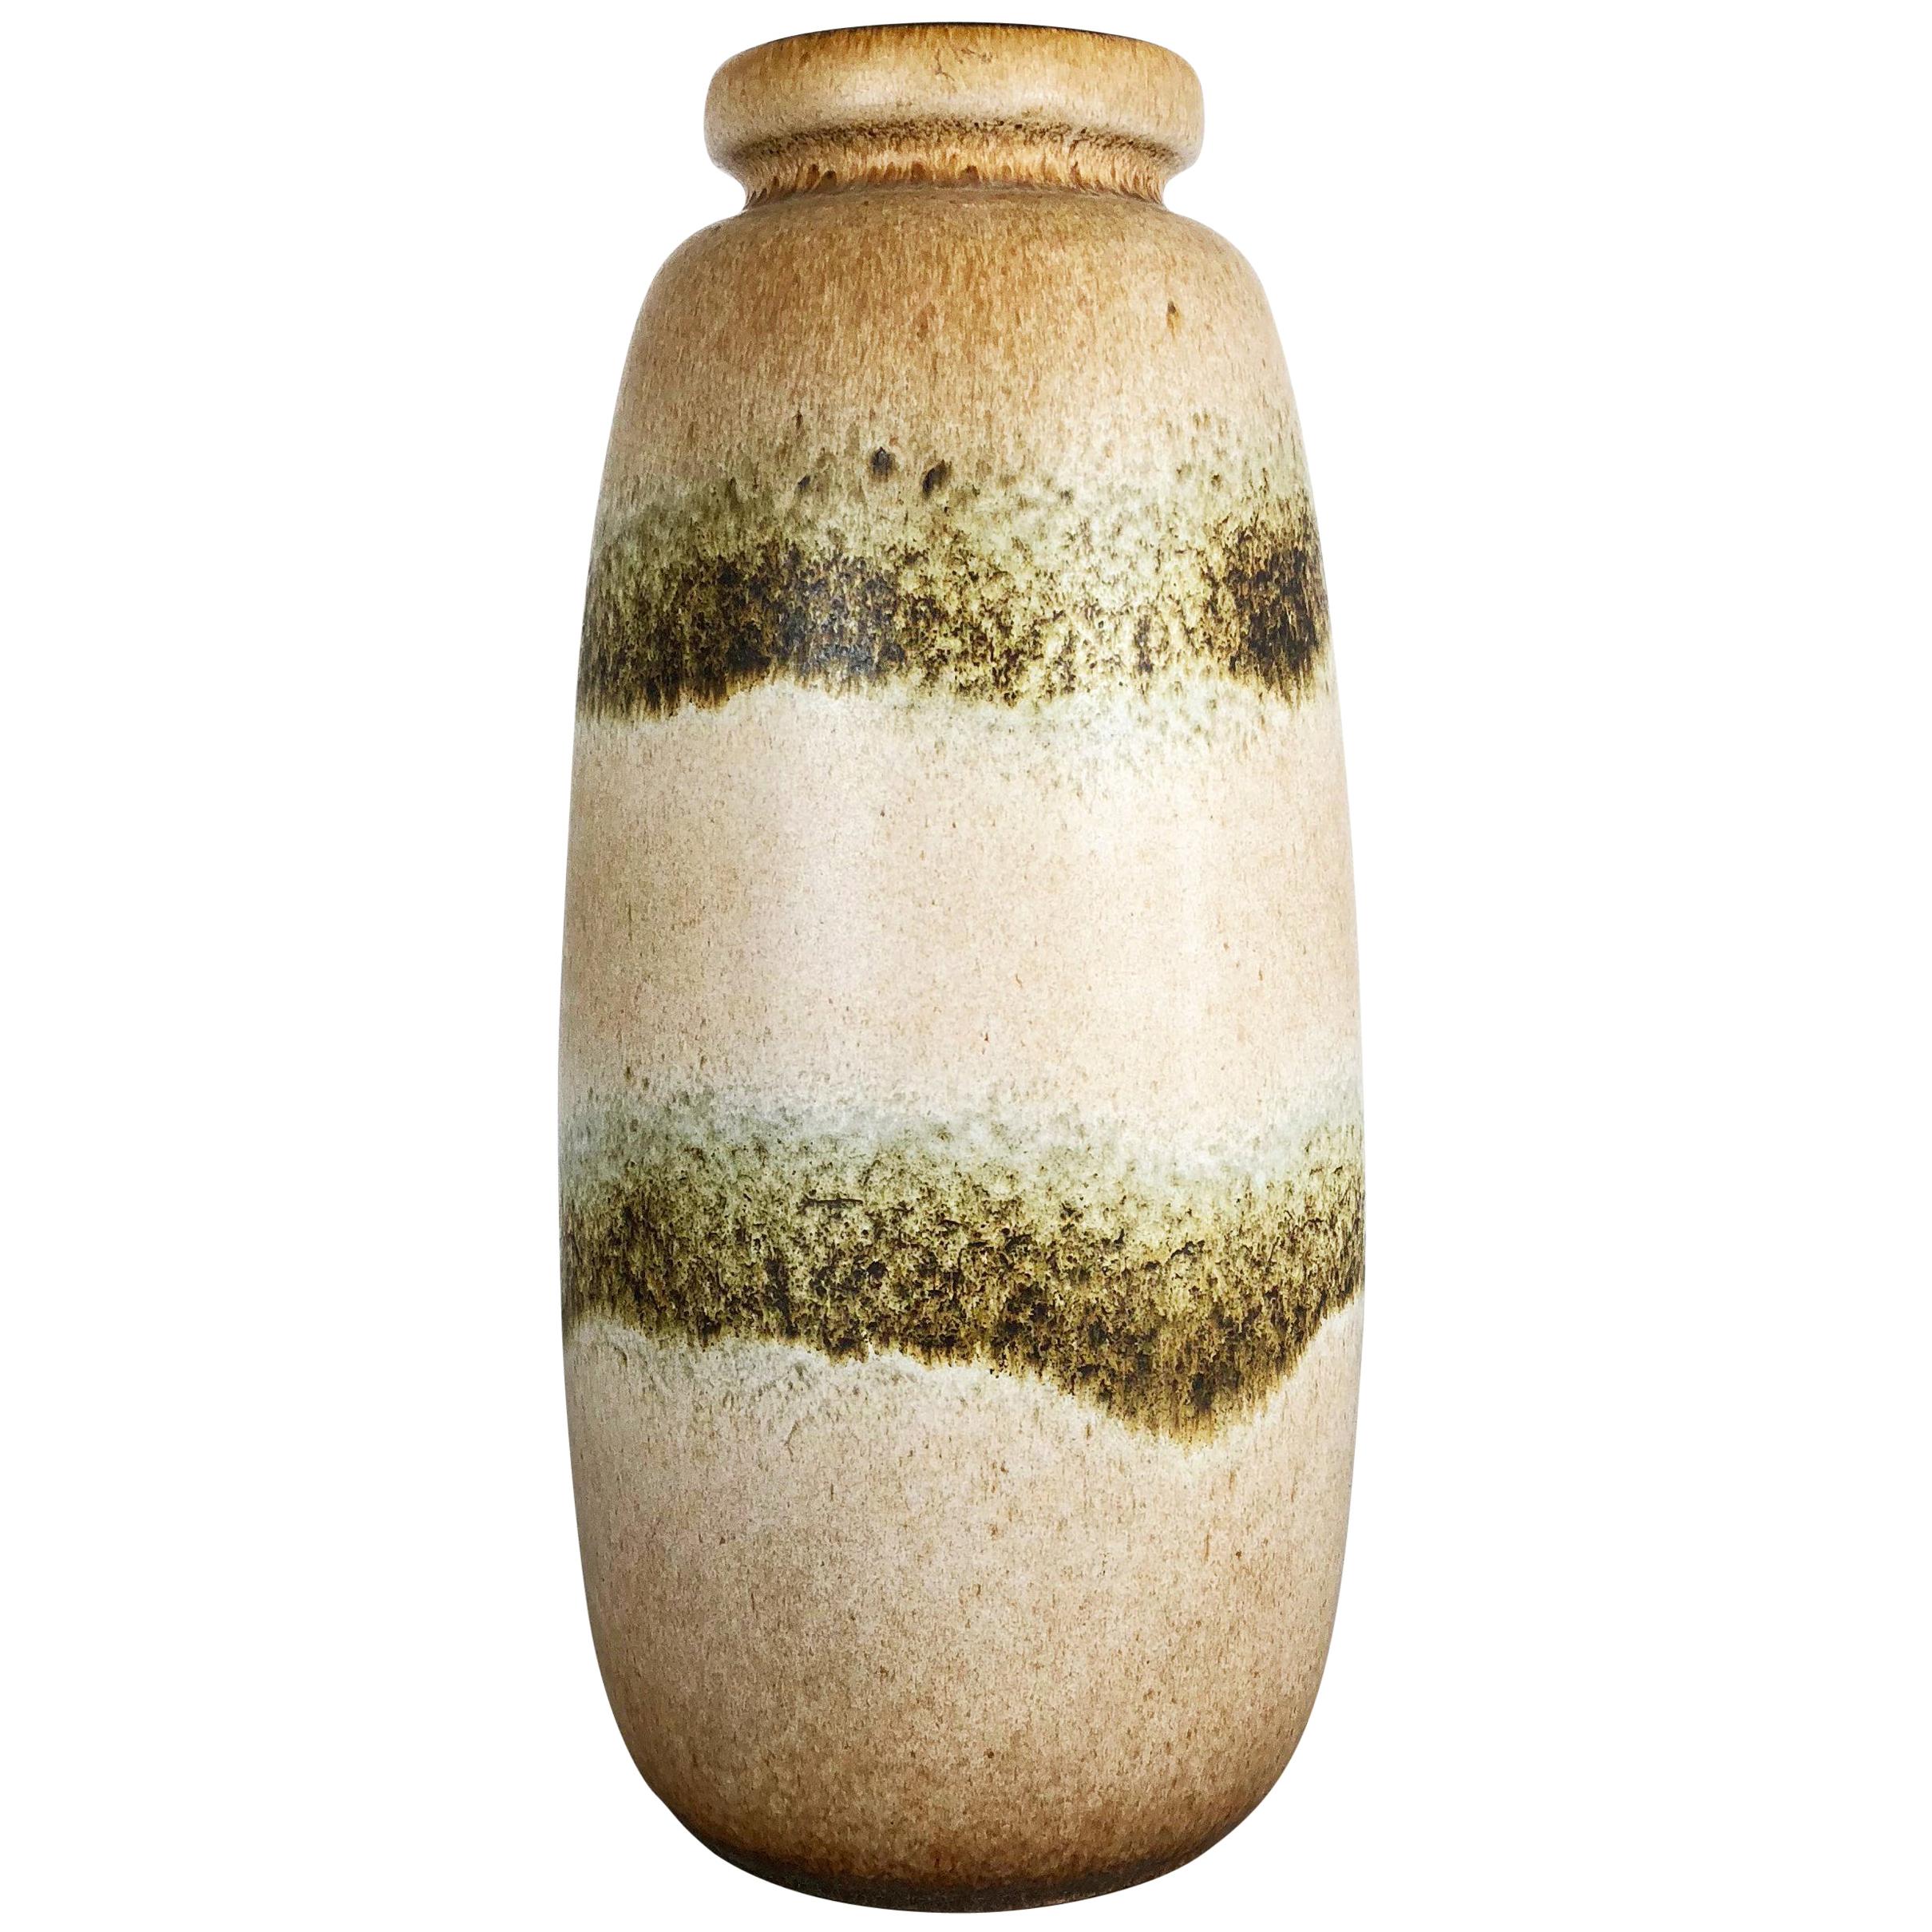 Grand vase de sol en poterie lave grasse multicolore 284-47 fabriqué par Scheurich, 1970